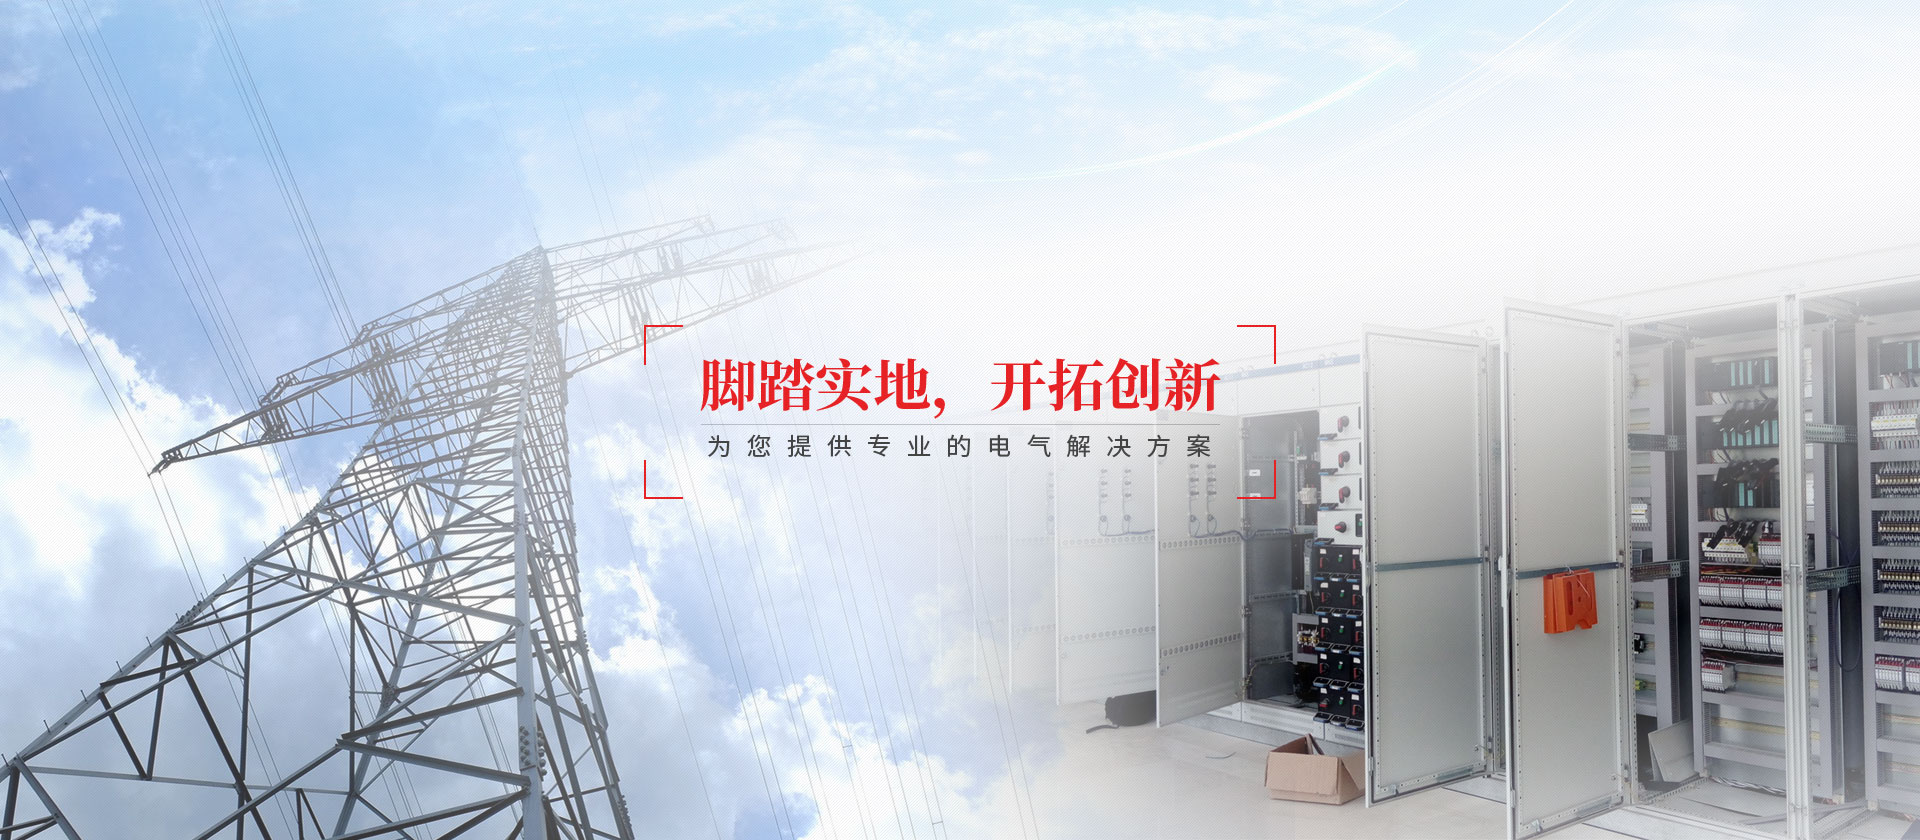 高低压成套配电柜厂家,广东粵科电气有限公司